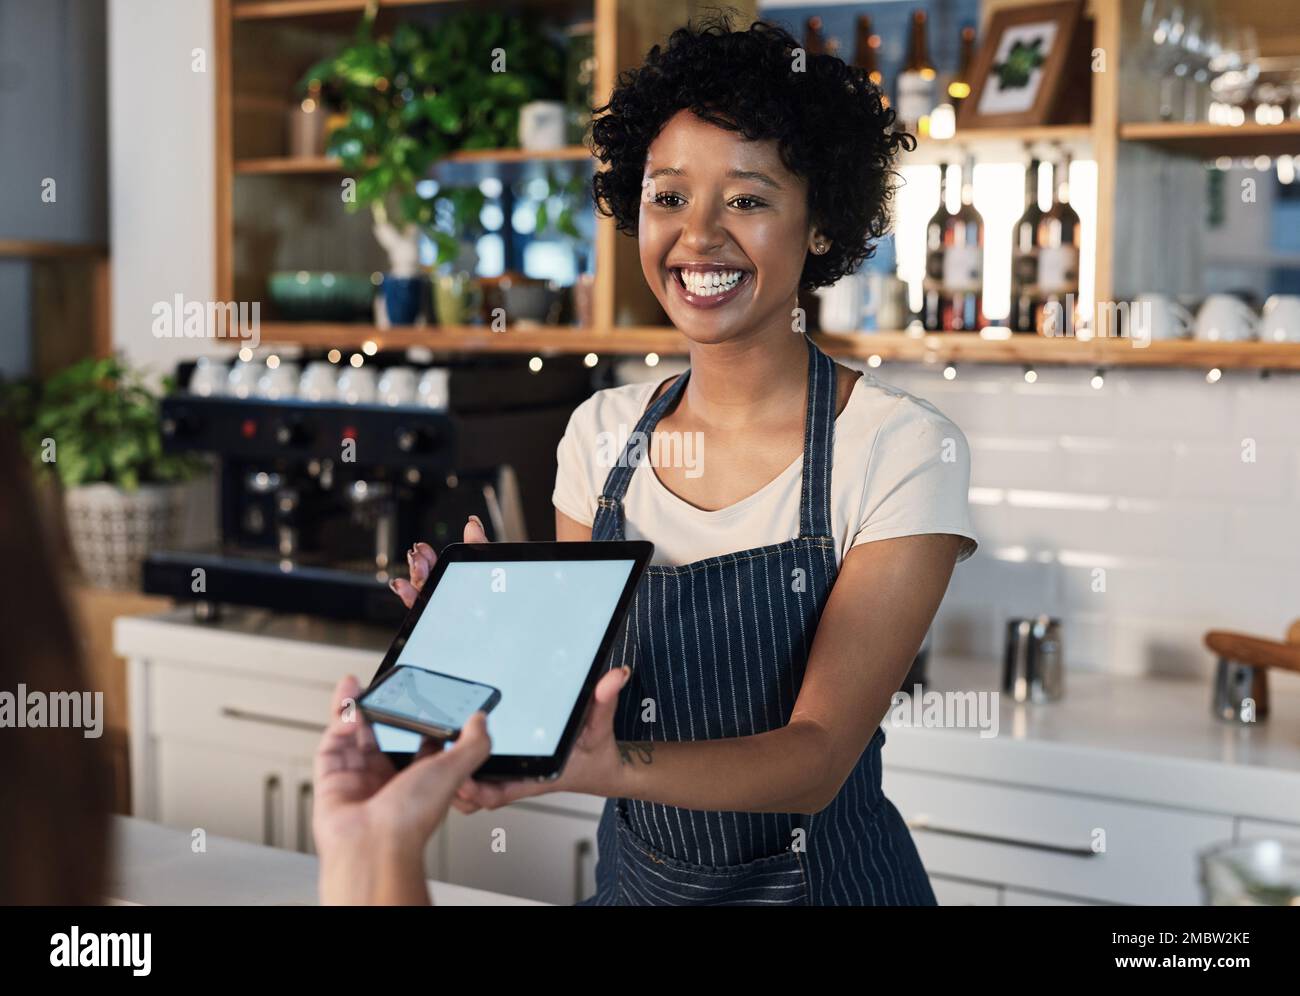 Service de qualité, de la caisse à la cuisine. une jeune femme qui accepte un paiement numérique d'un client dans un café. Banque D'Images